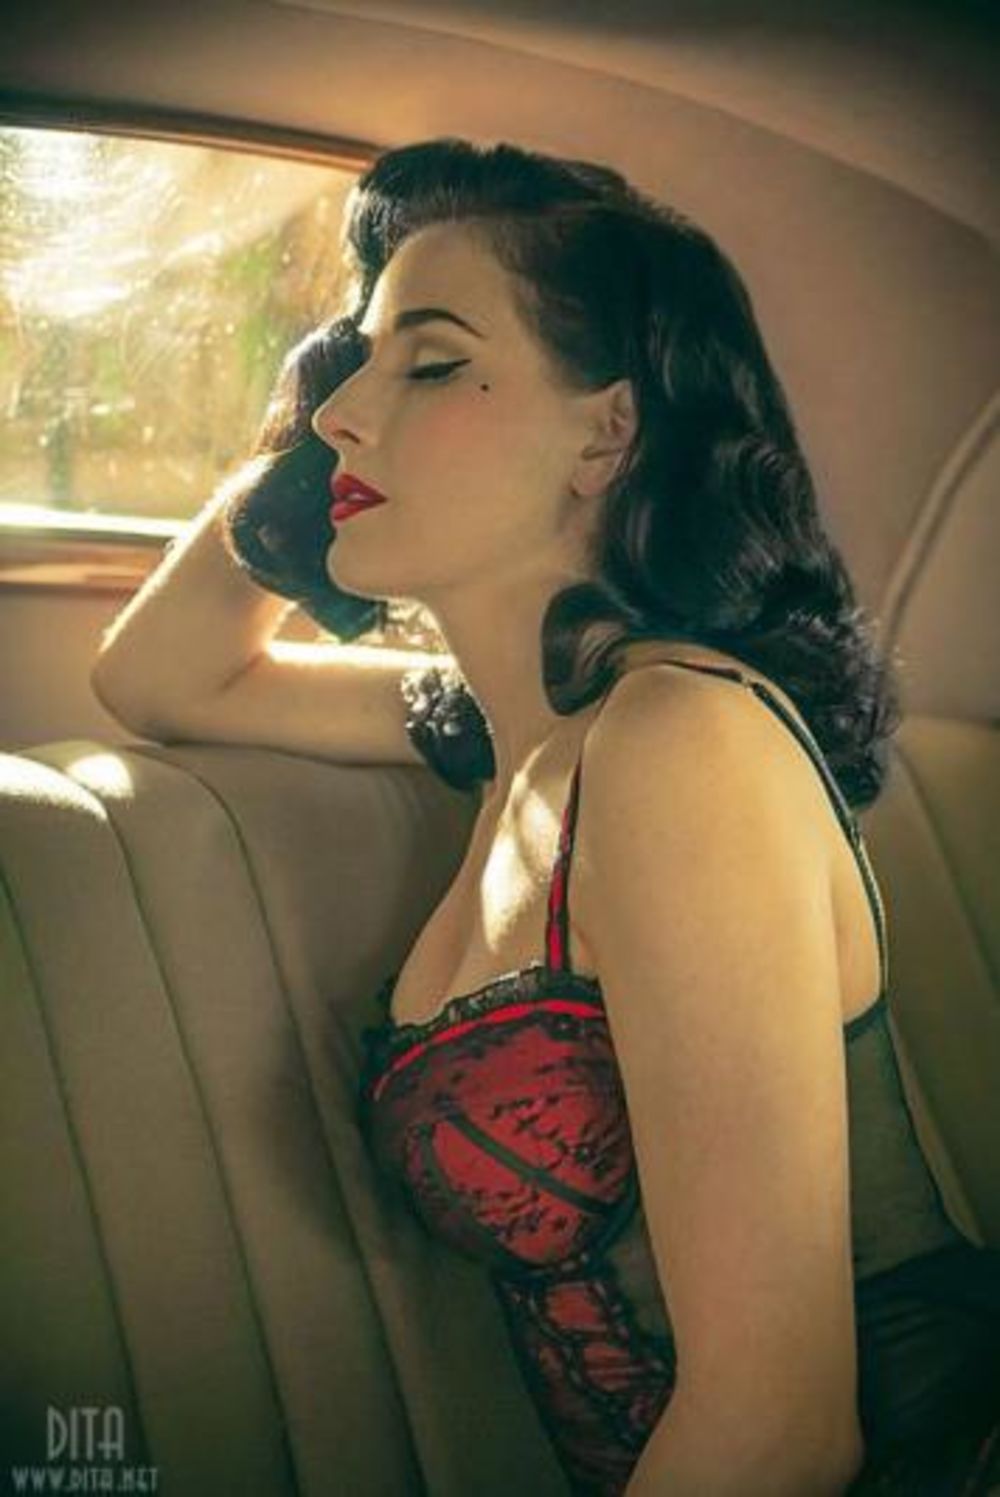 Kraljica burleske je na Ebay-u postavila oglas za prodaju automobile iz 1939. godine uz niz provokativnih fotografija na kojima je ona u centru pažnje. Na fotografijama ona je u svom prepoznatljivom izdanju: kožne rukavice, kratka izazovna suknja, šešir sa mre